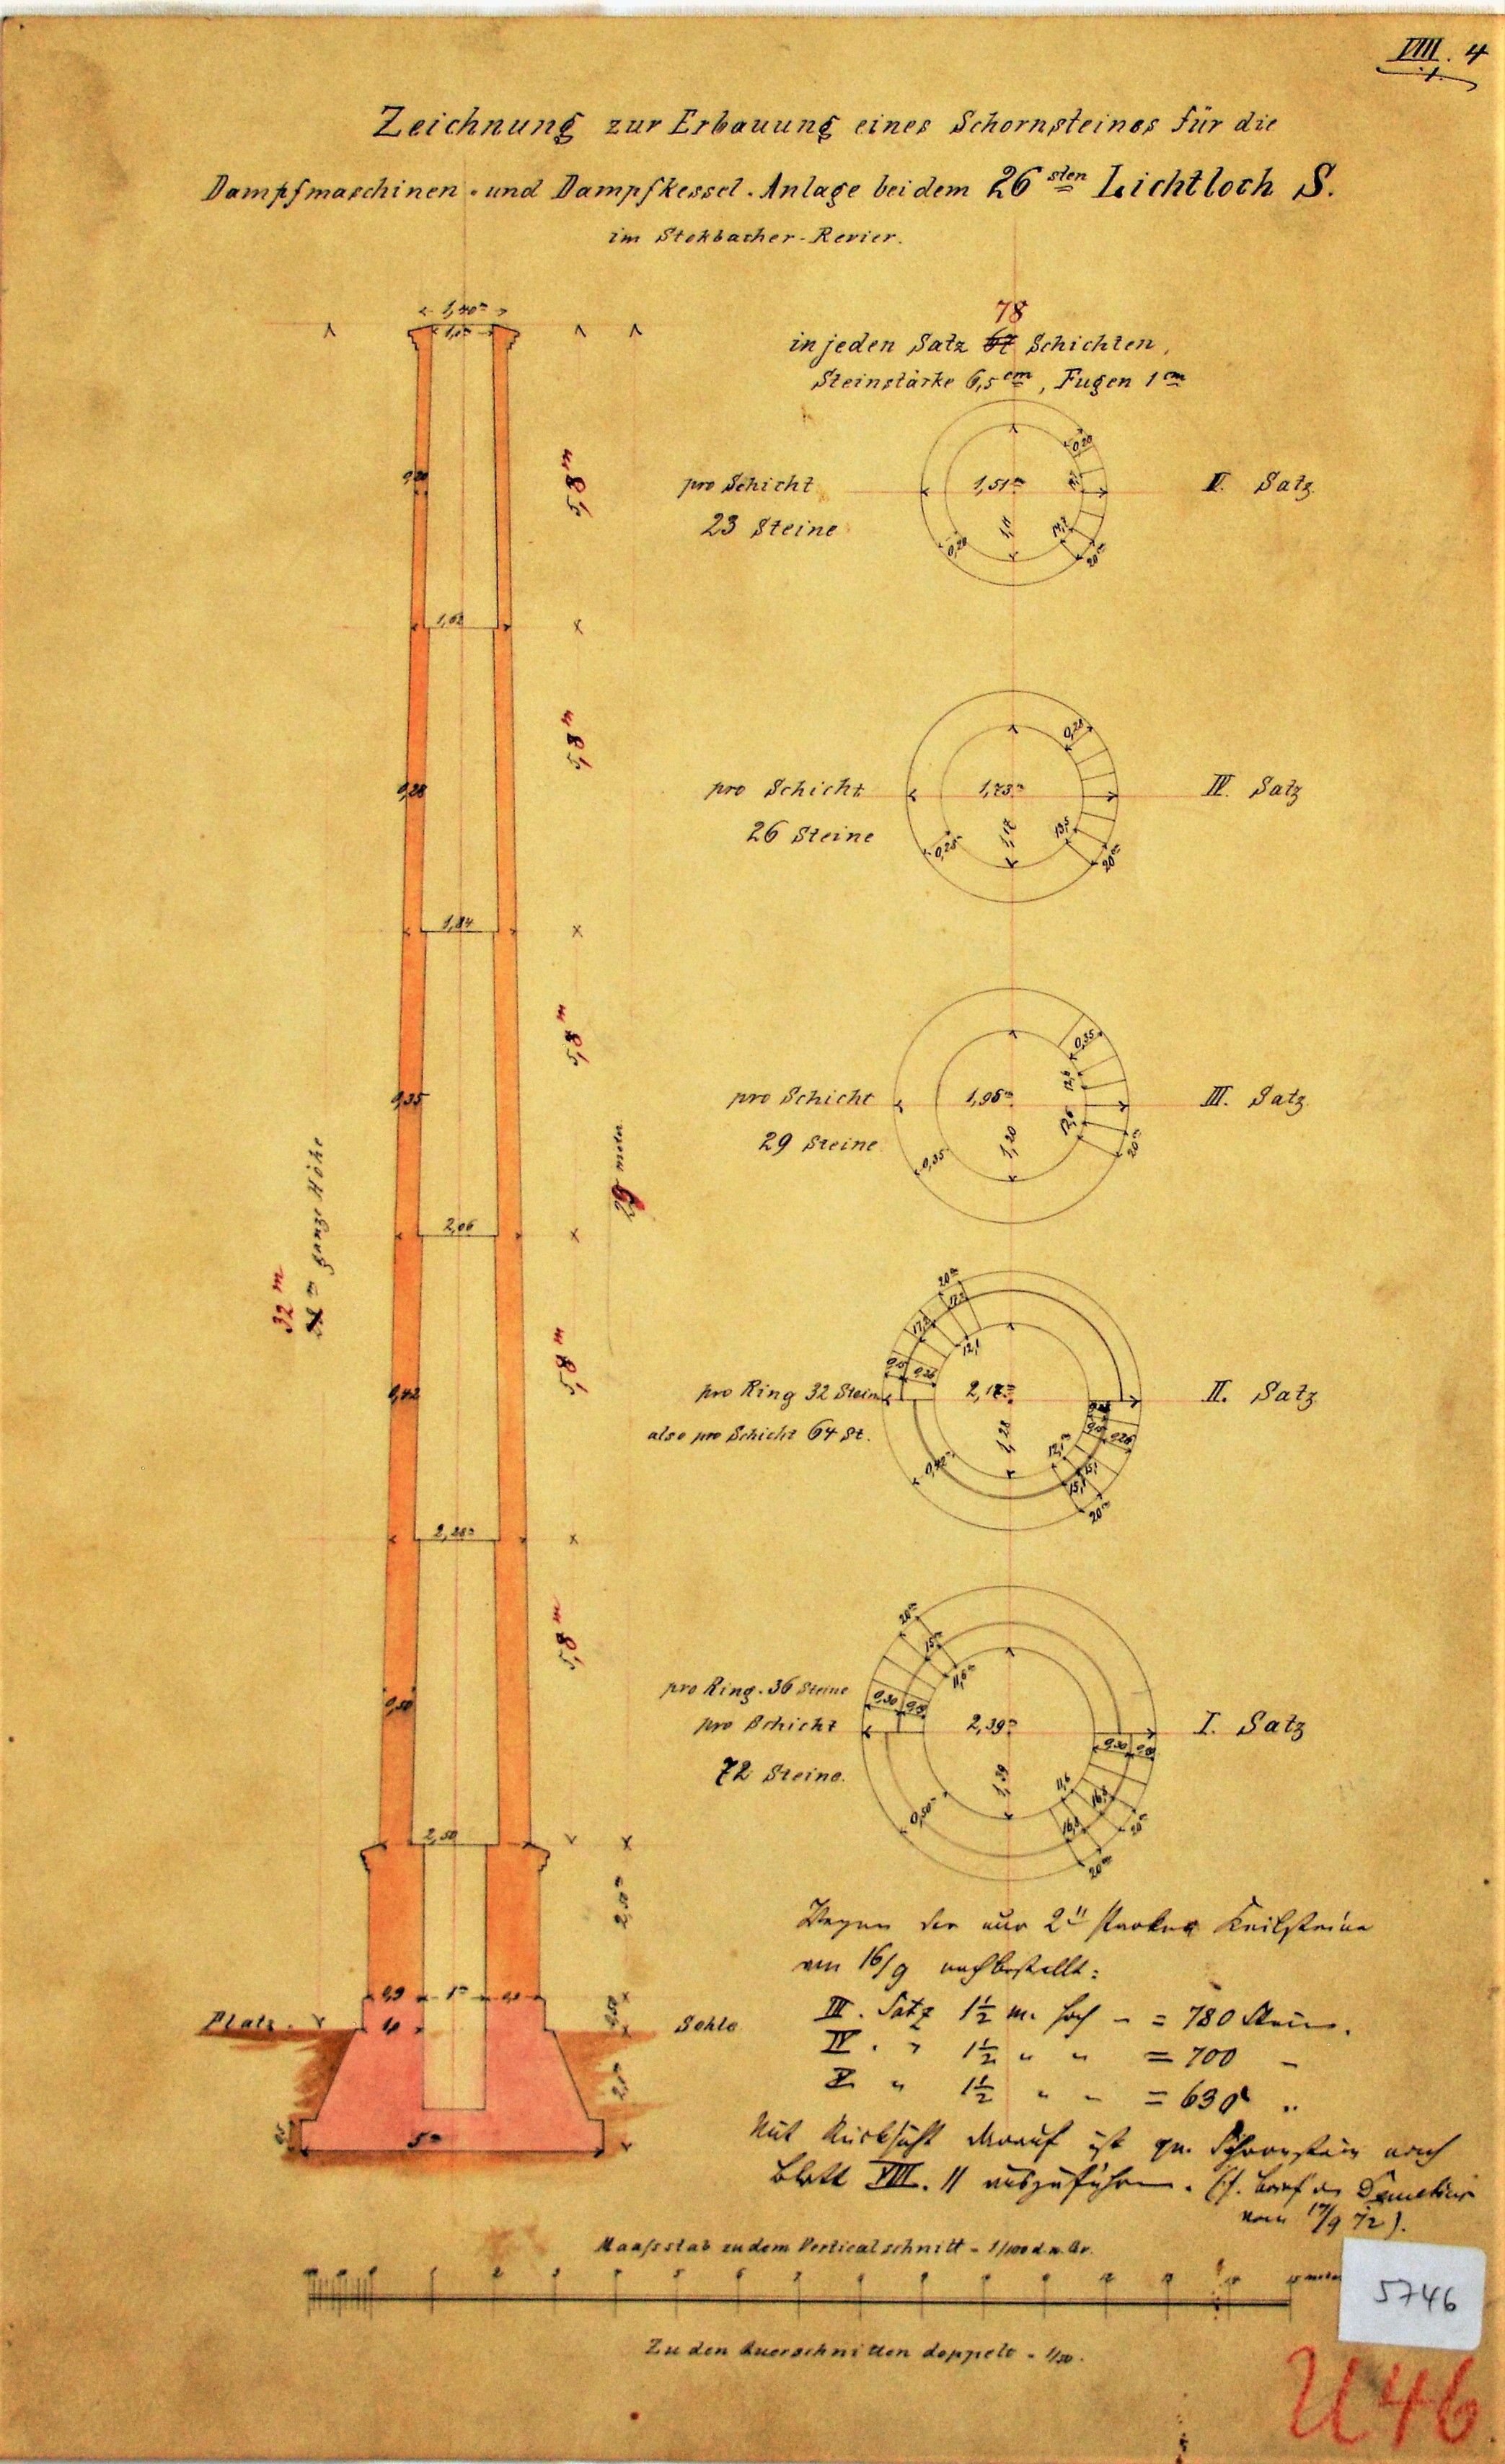 Zeichnung zur Erbauung eines Schornsteines für die Dampfmaschinen- und Dampfkesssel-Anlage bei dem 26 sten Lichtloch S im Stockbacher Revier. (Mansfeld-Museum im Humboldt-Schloss CC BY-NC-SA)